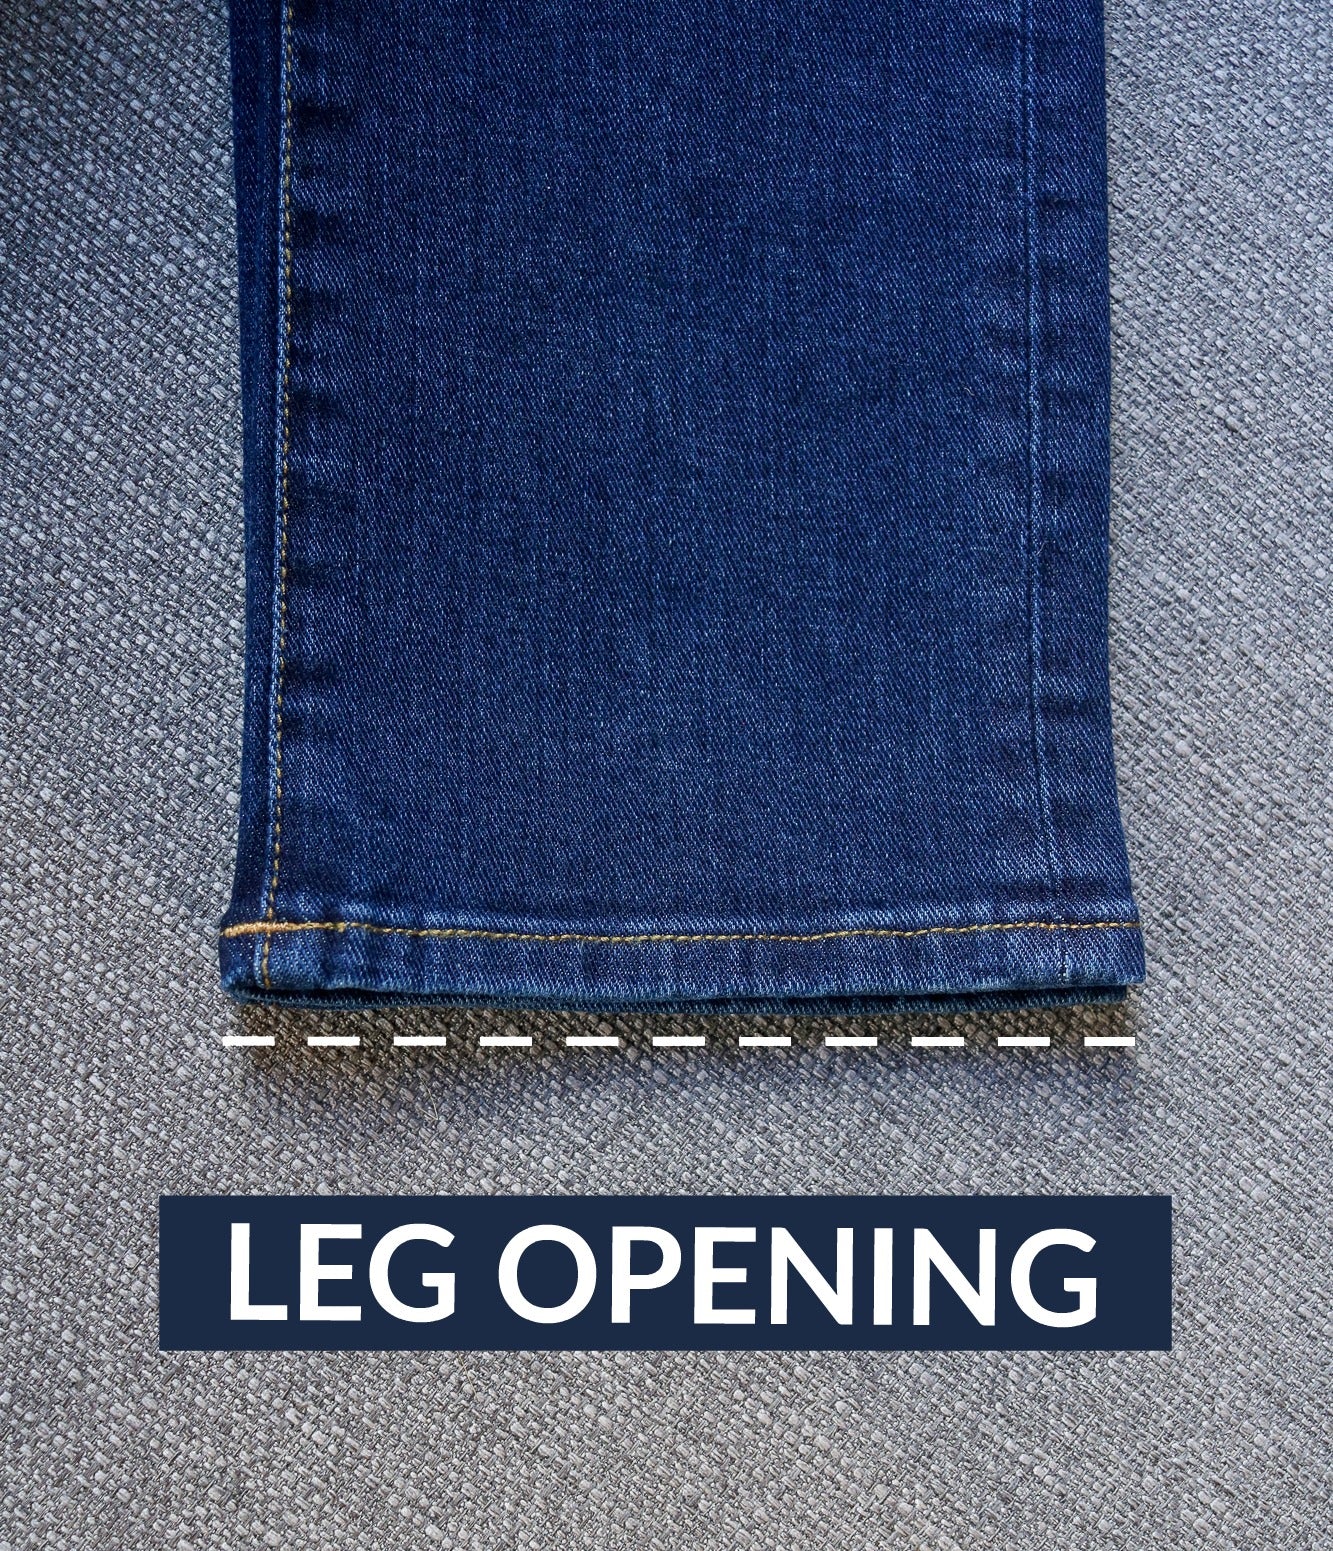 Leg opening